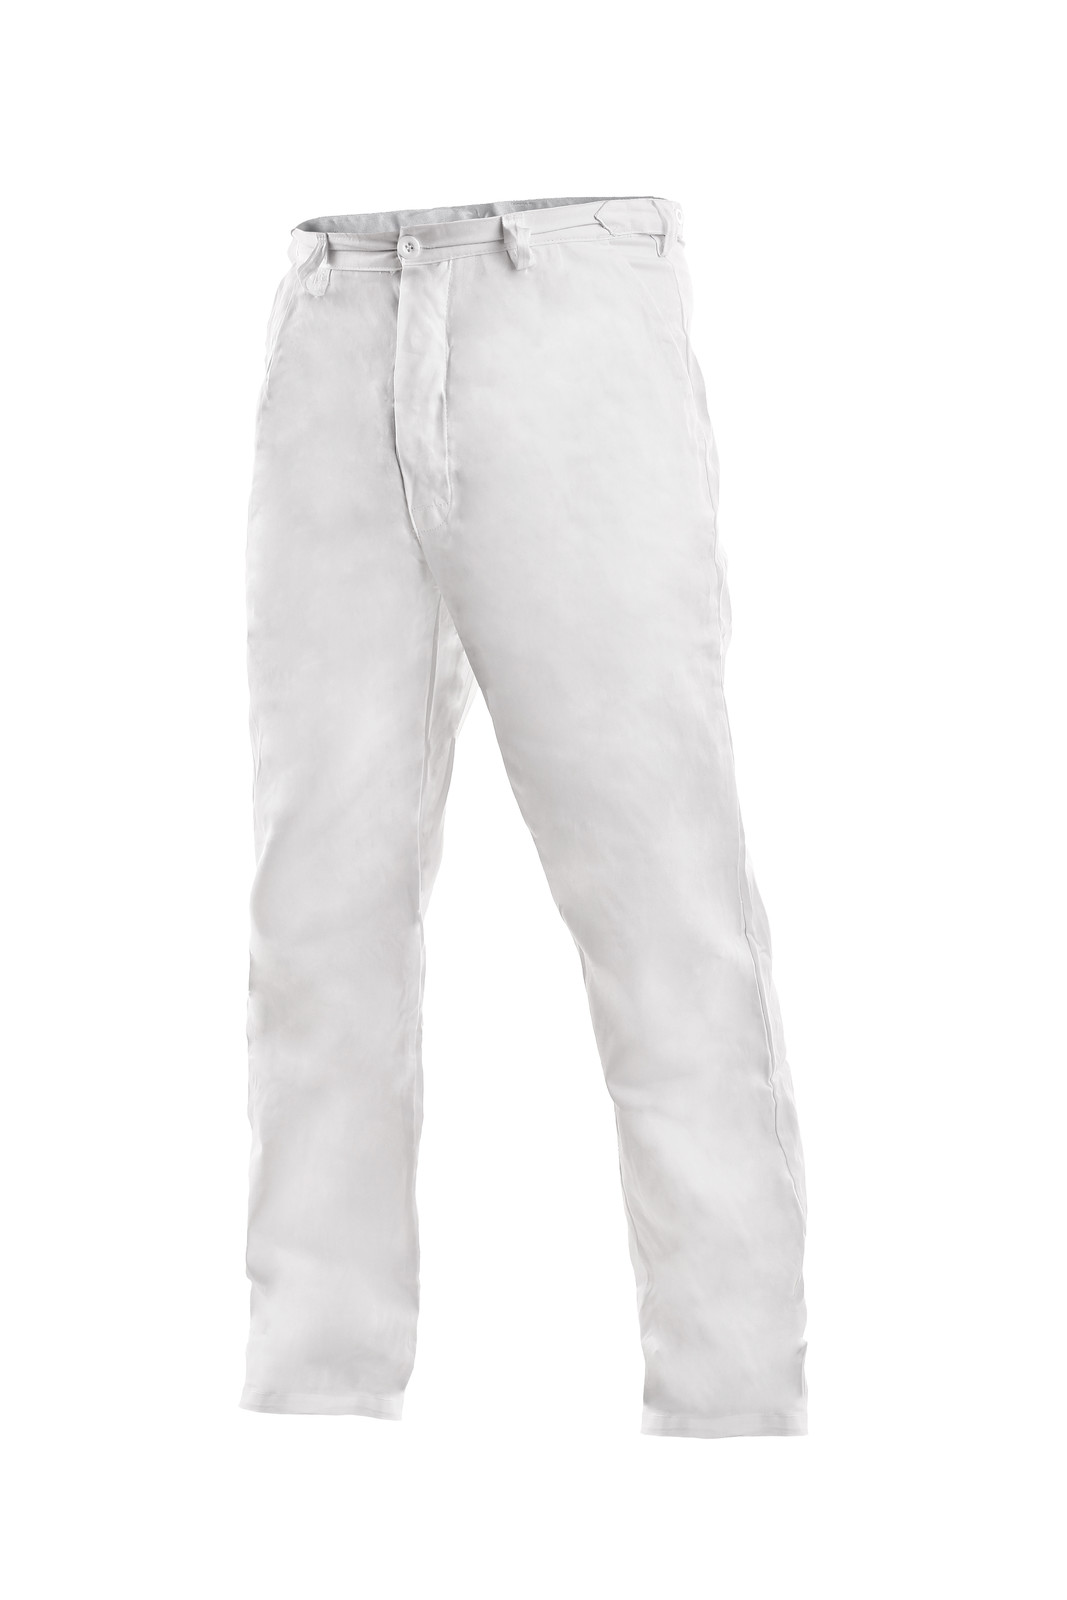 Pánske biele bavlnené nohavice Artur - veľkosť: 60, farba: biela